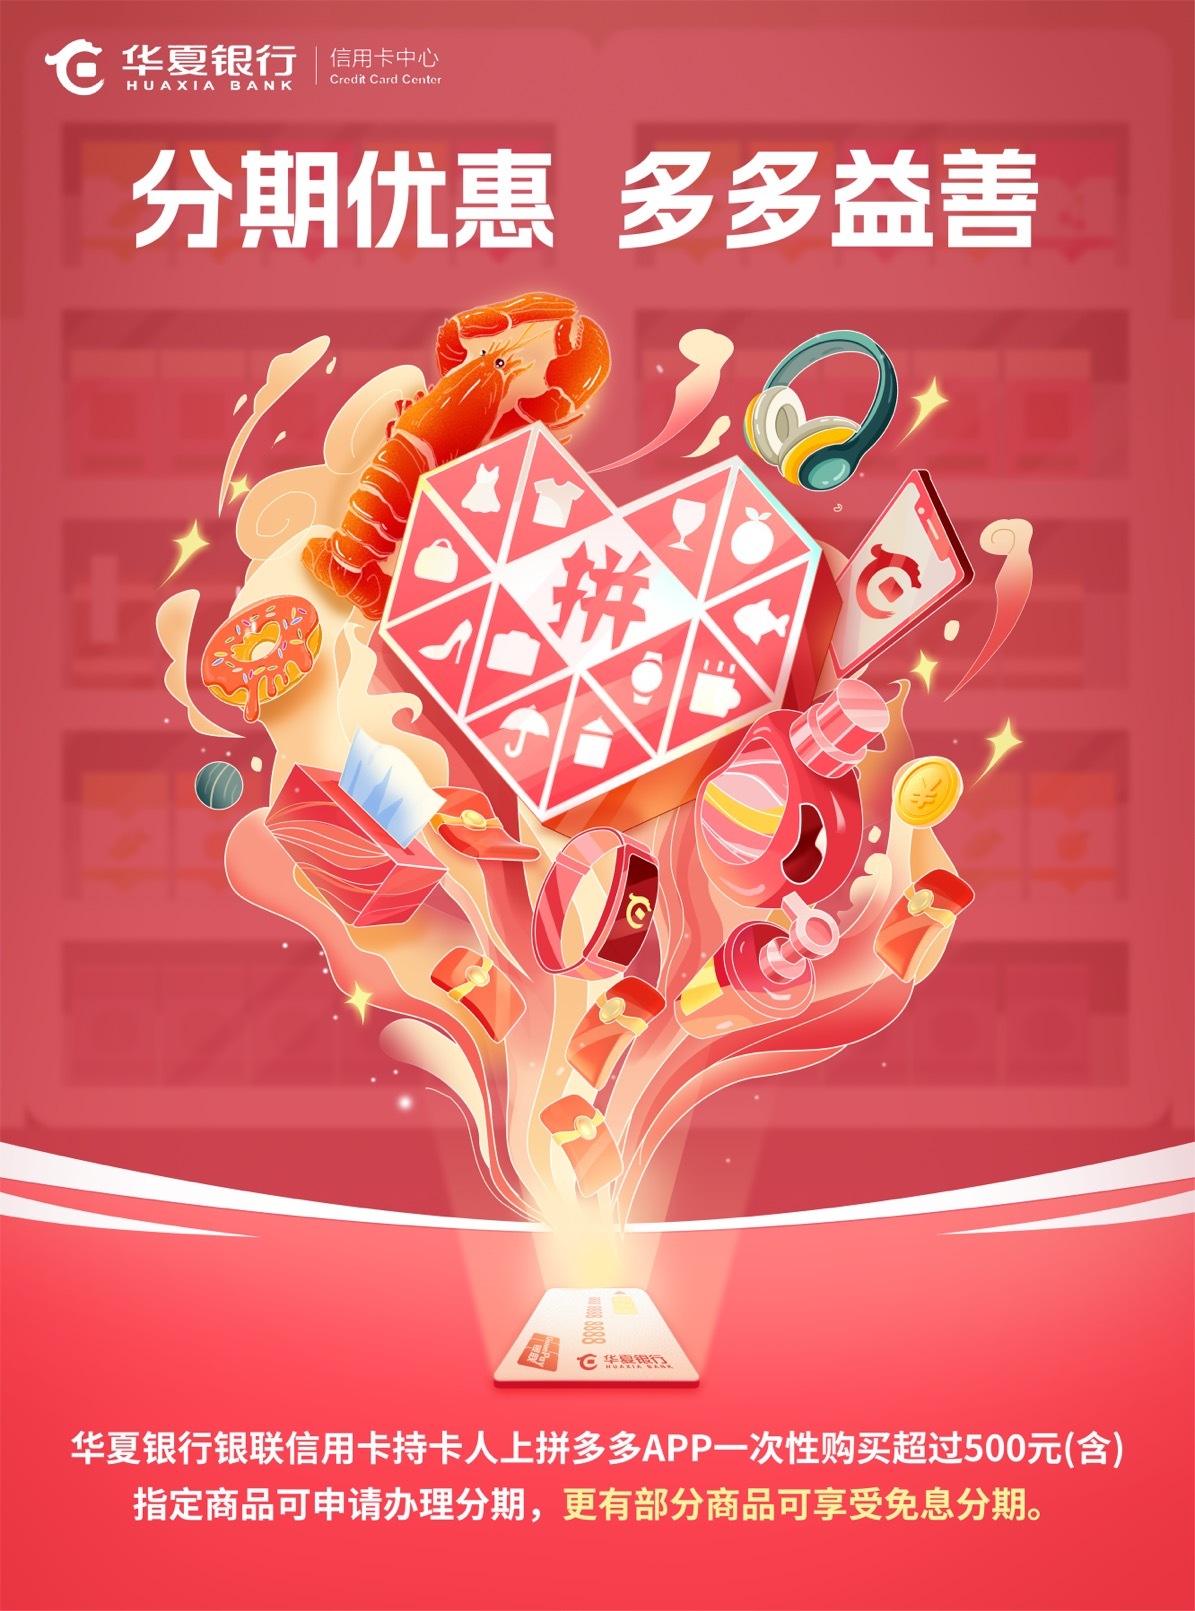 华夏银行海报竞标图2